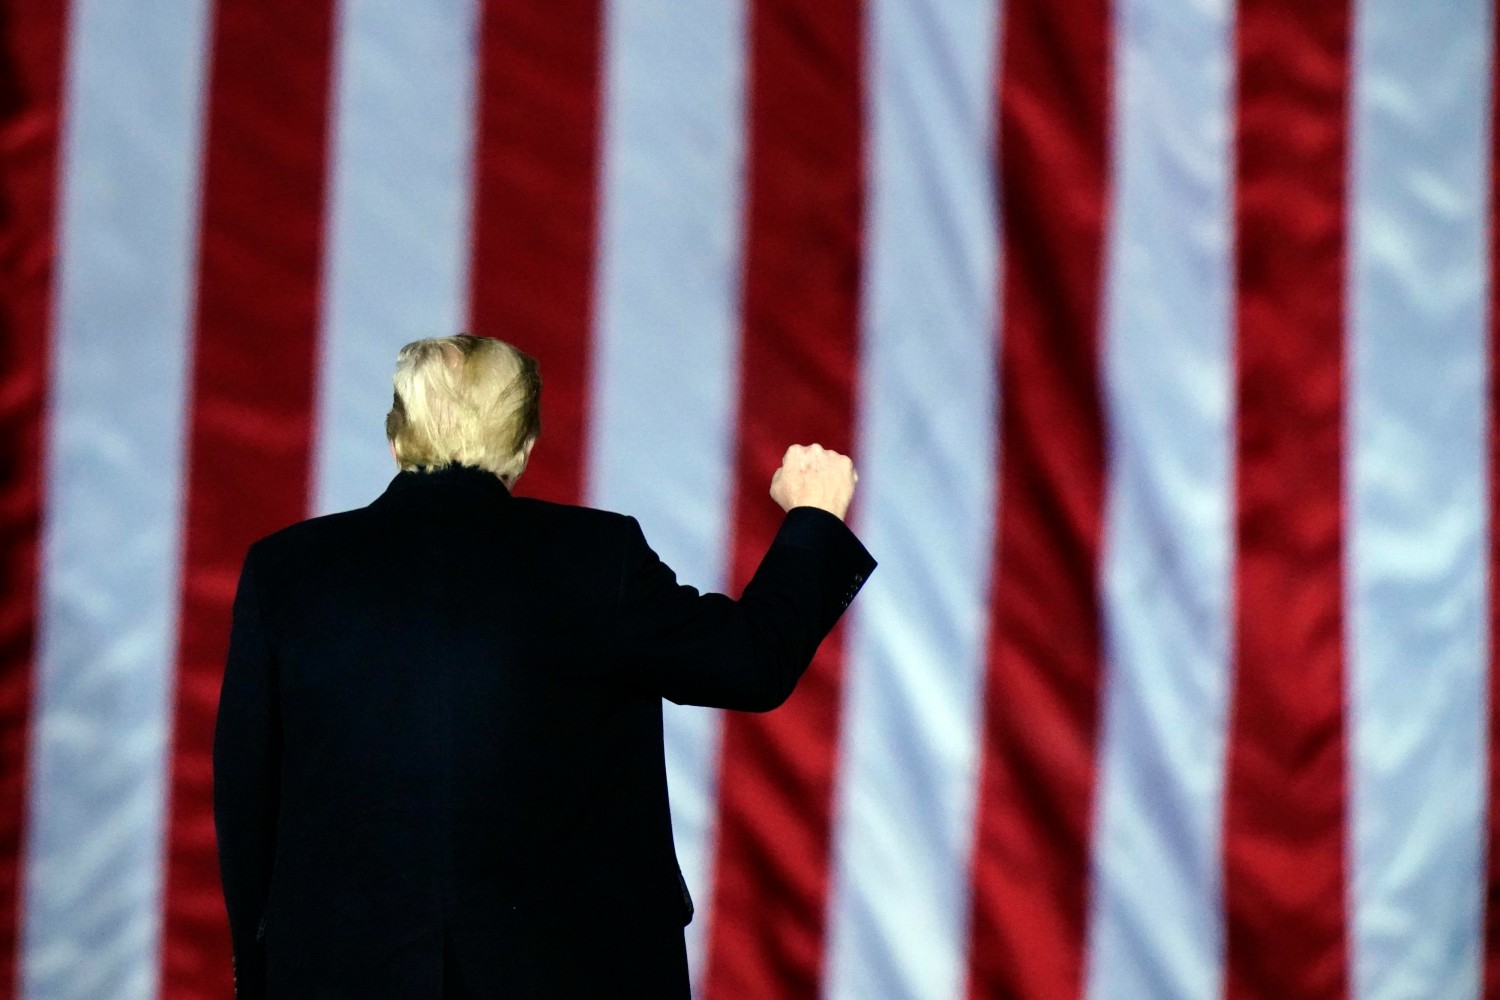 Амерички председник Доналд Трамп гестикулира стиснутом песницом током предизборног скупа подршке републиканским кандидатима за Сенат из Џорџије, Далтон, 04. јануар 2021. (Фото: AP Photo/Brynn Anderson)